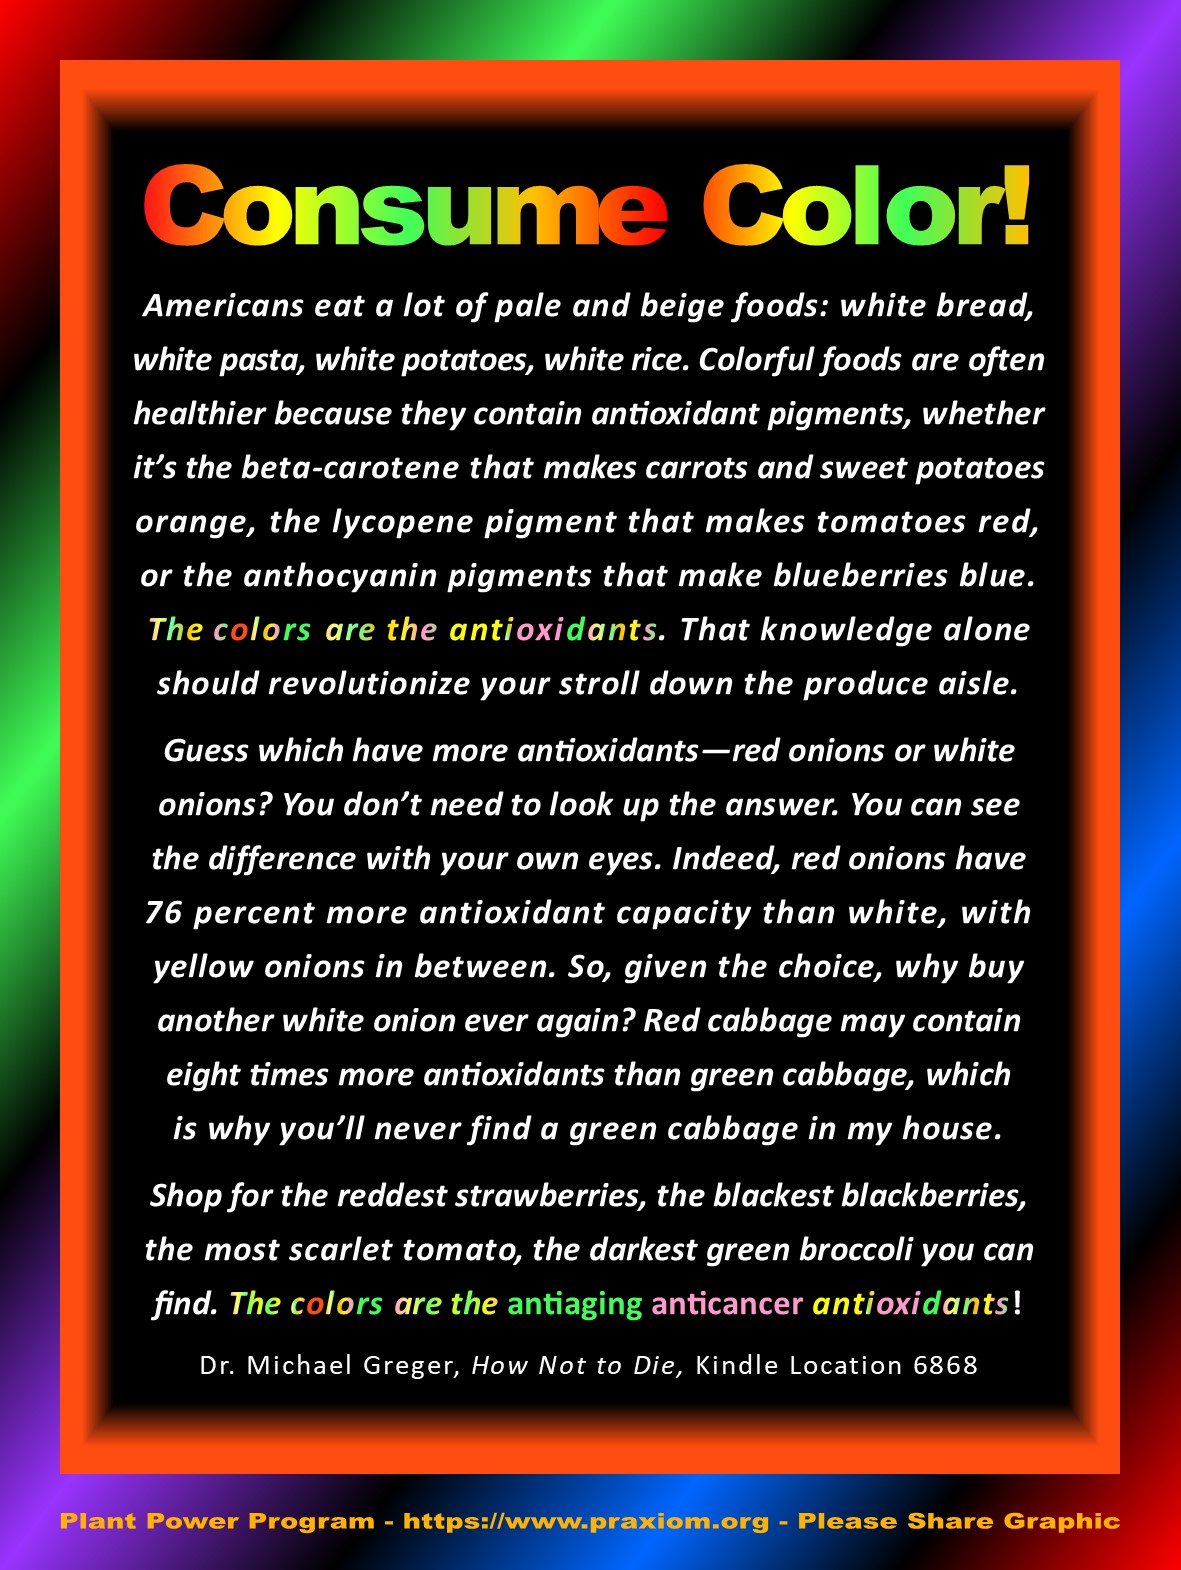 Consume color